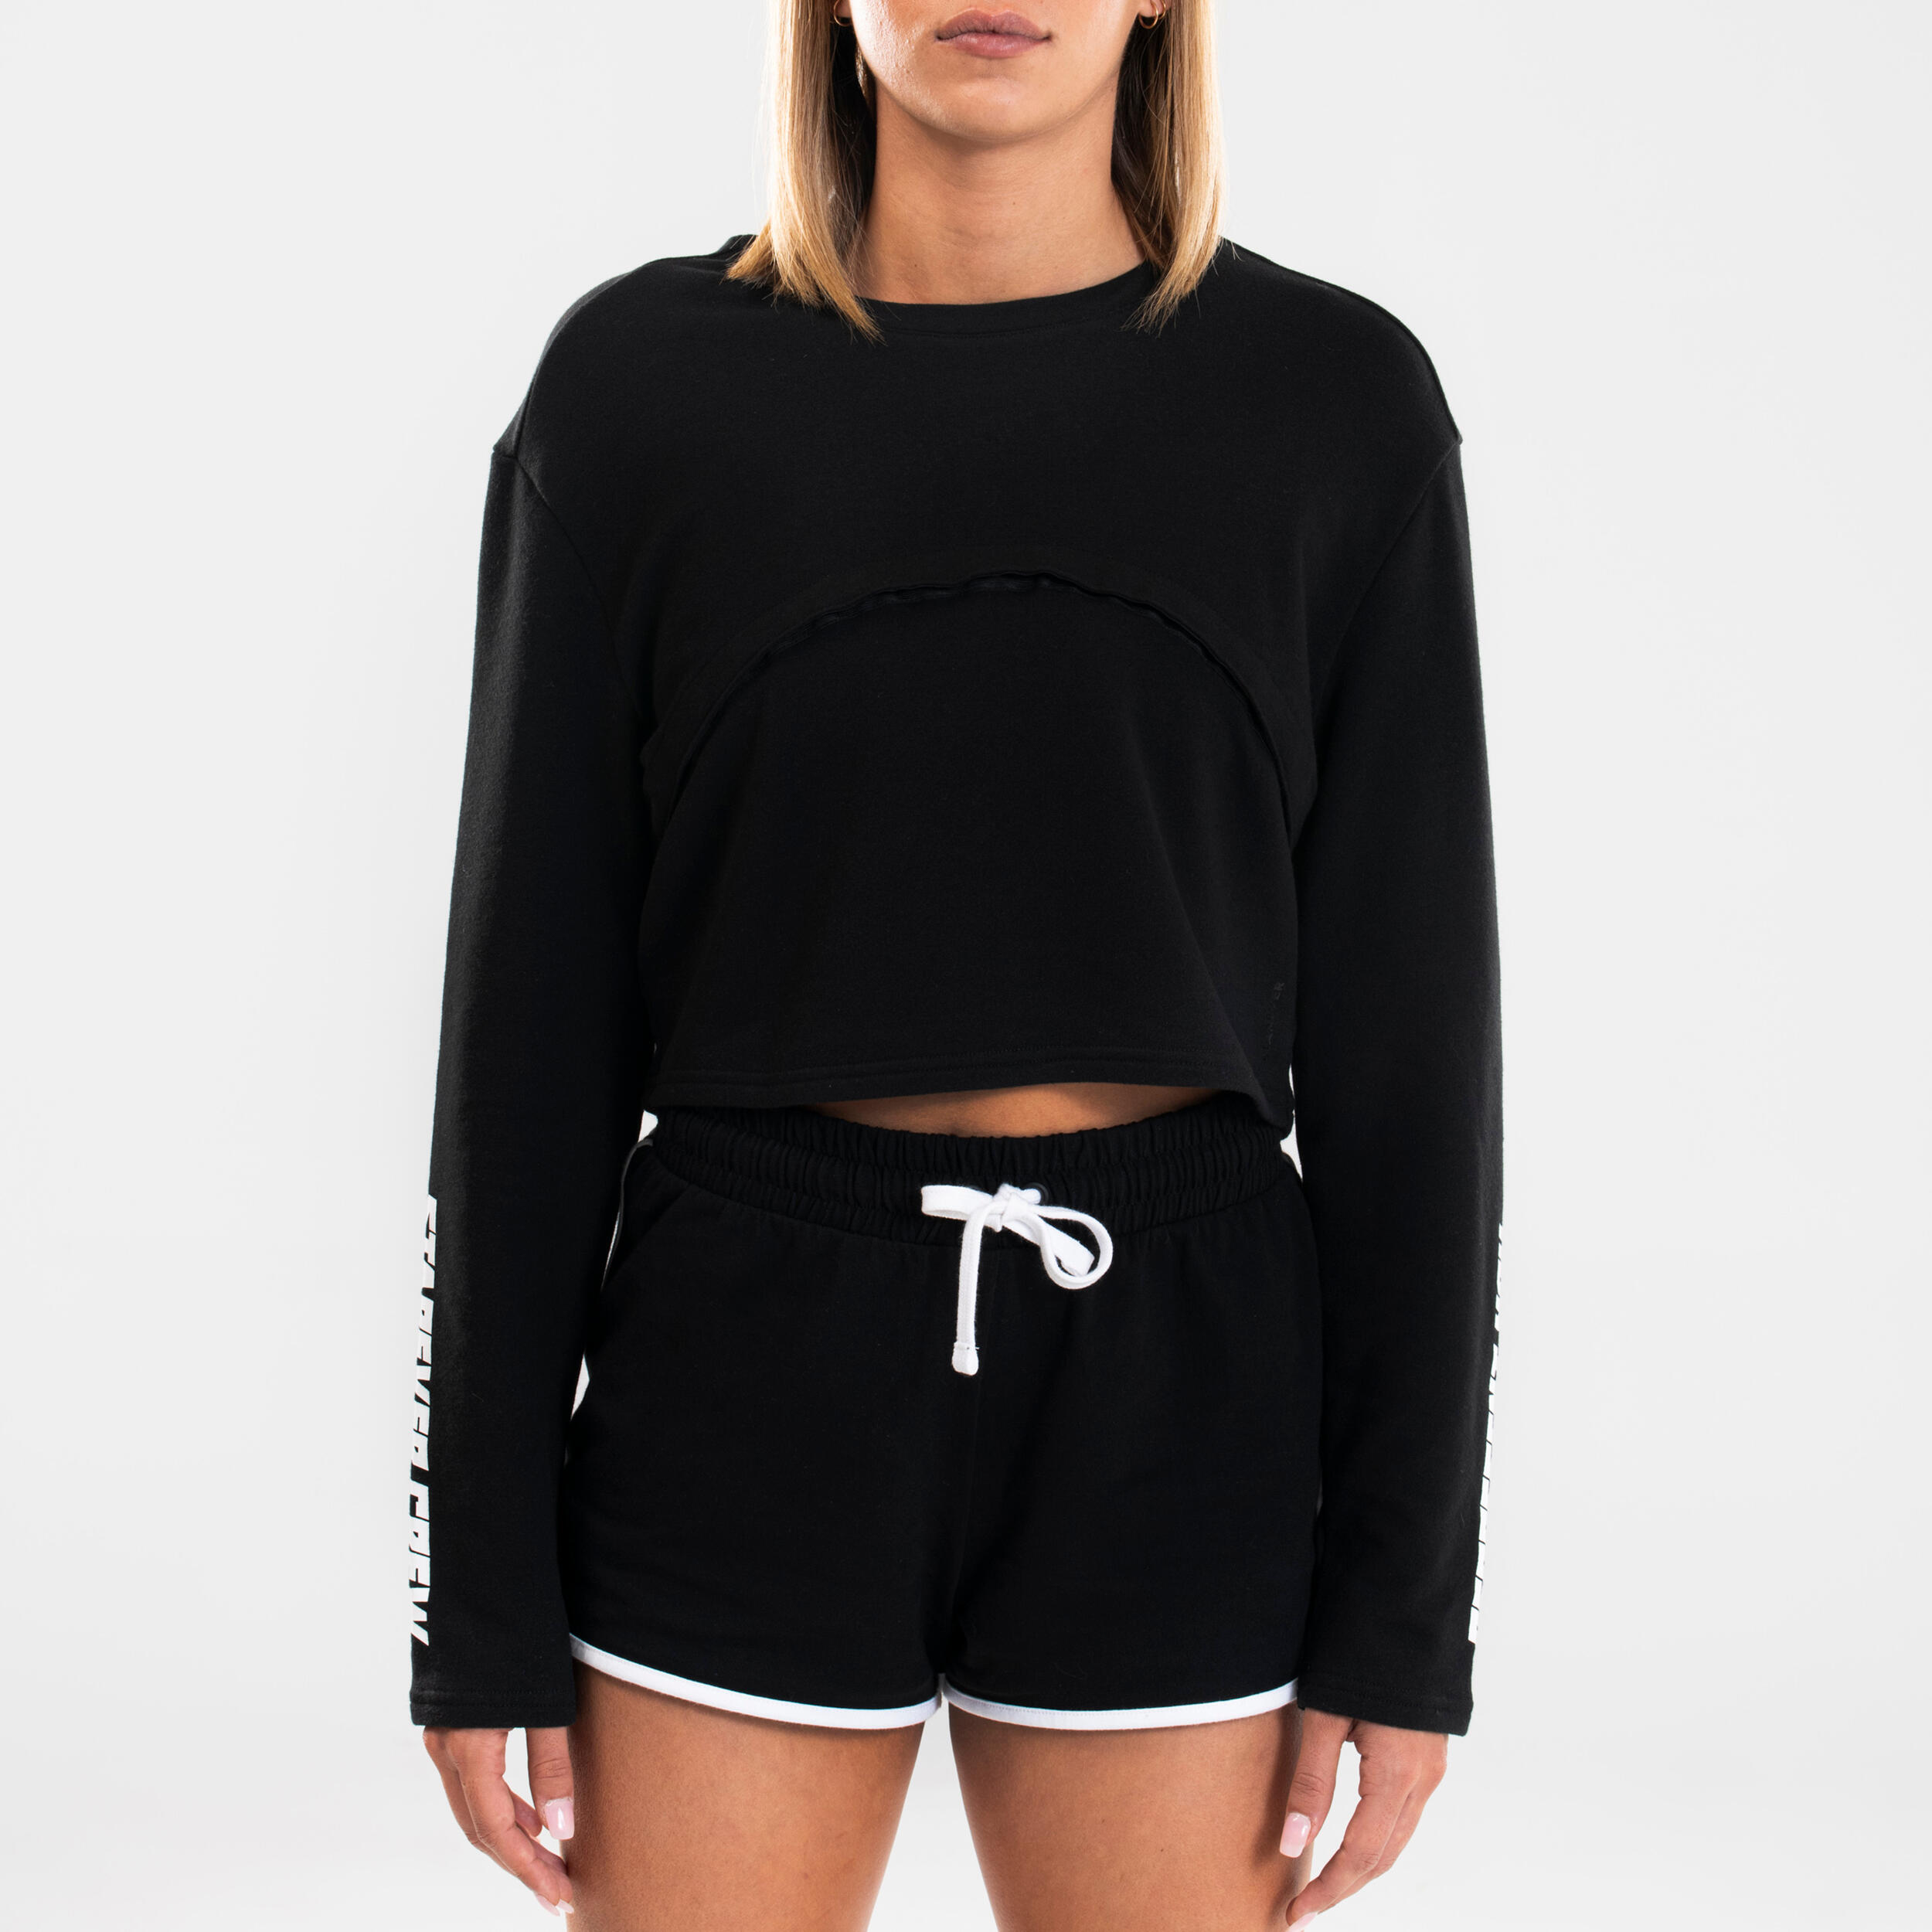 Women's Adjustable Urban Dance Sweatshirt - Black 3/9